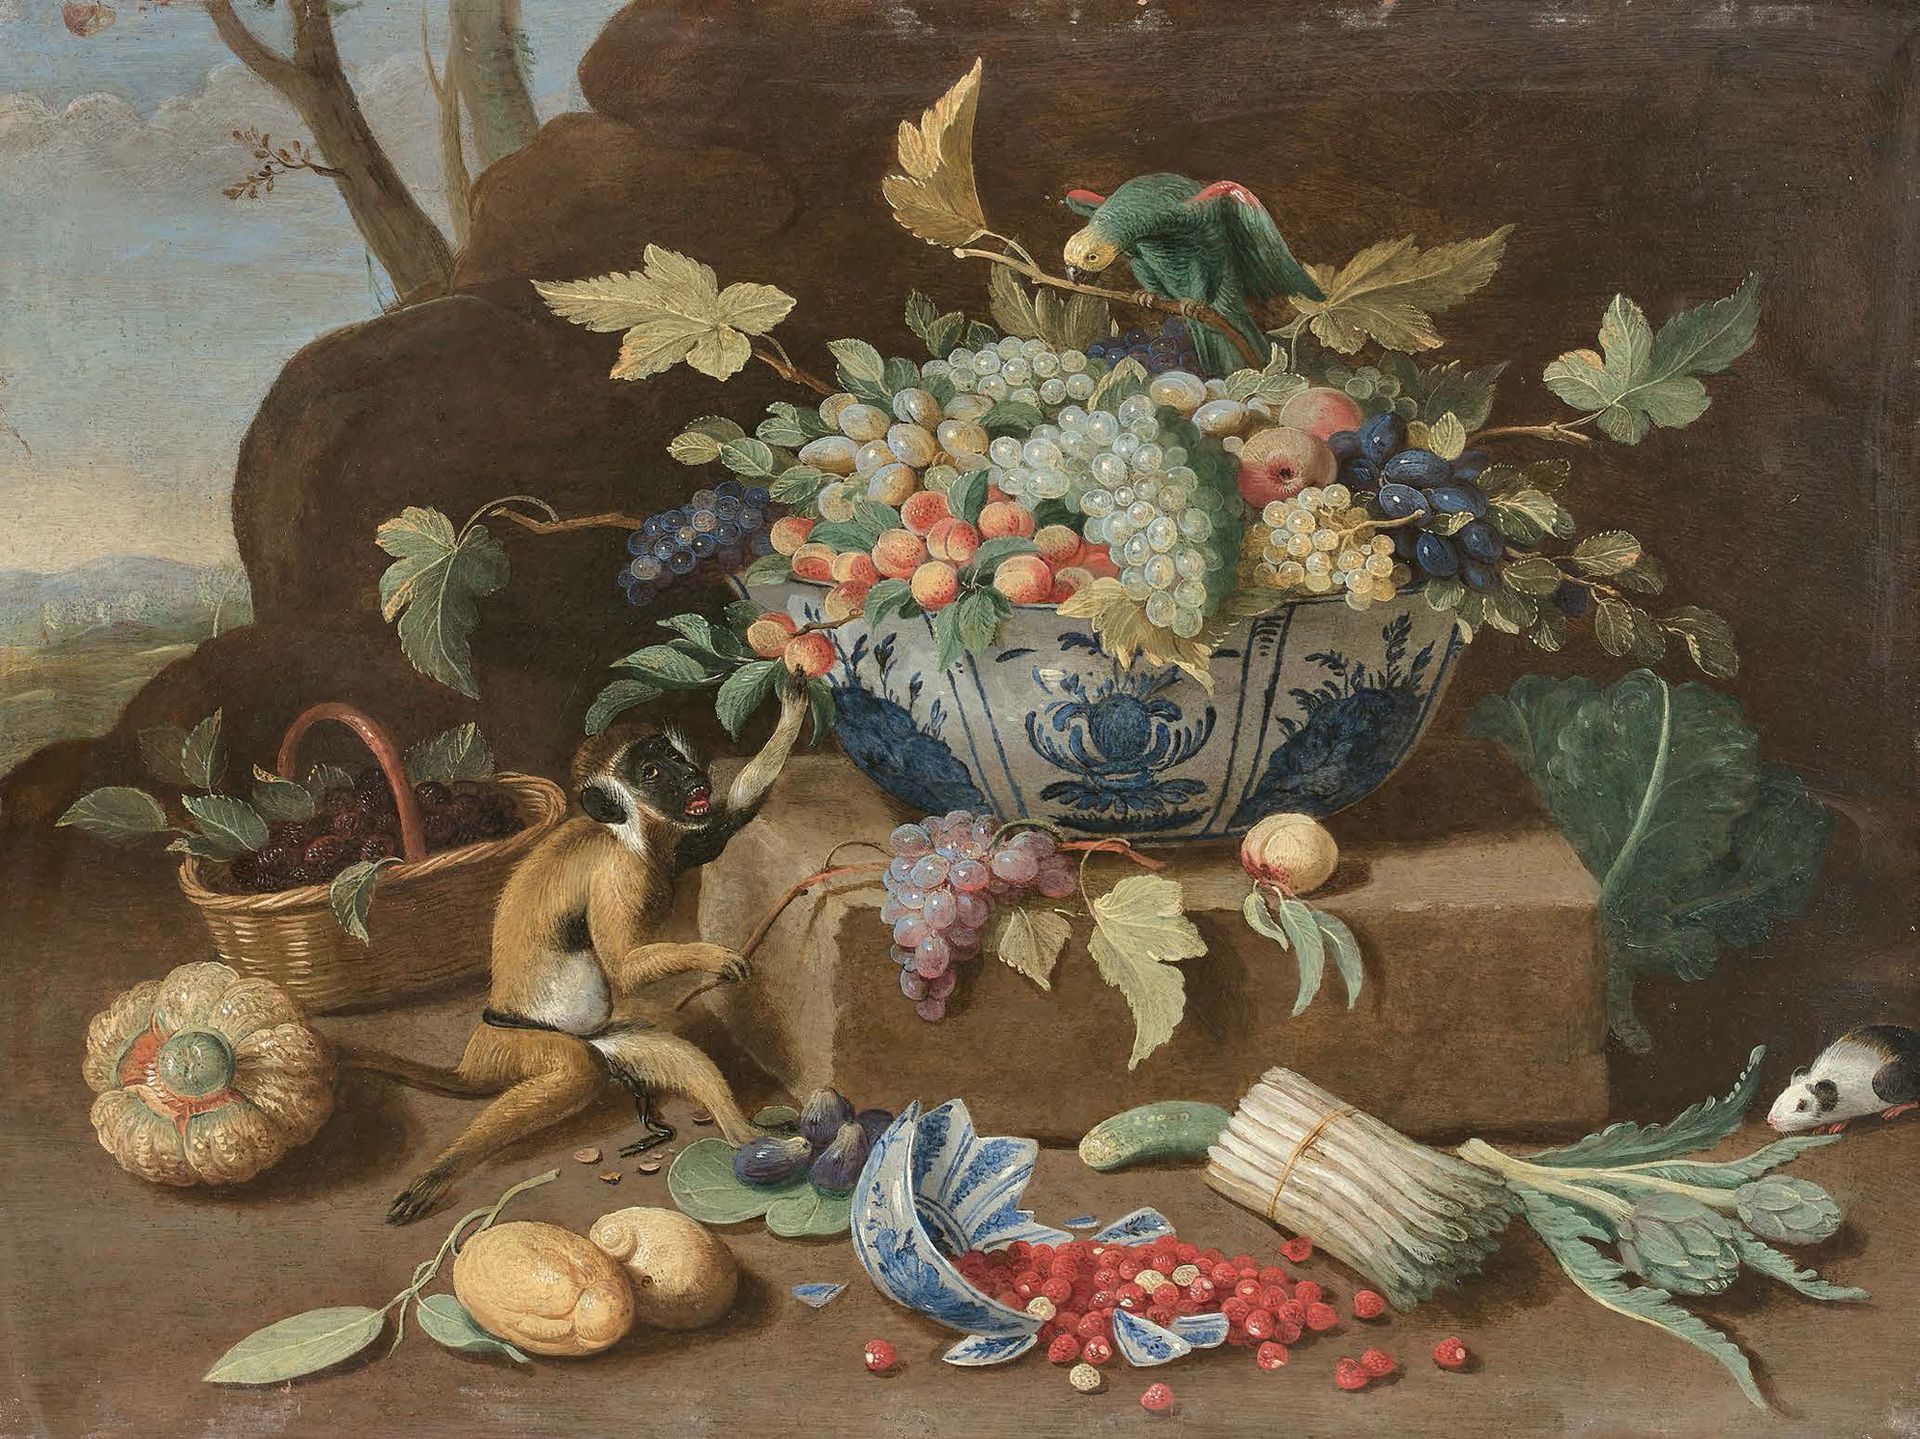 Jan van KESSEL le JEUNE (Anvers 1654 - Madrid 1708) 静物画与万里中国瓷杯，一个装满了水果，另一个倒过来打碎了&hellip;